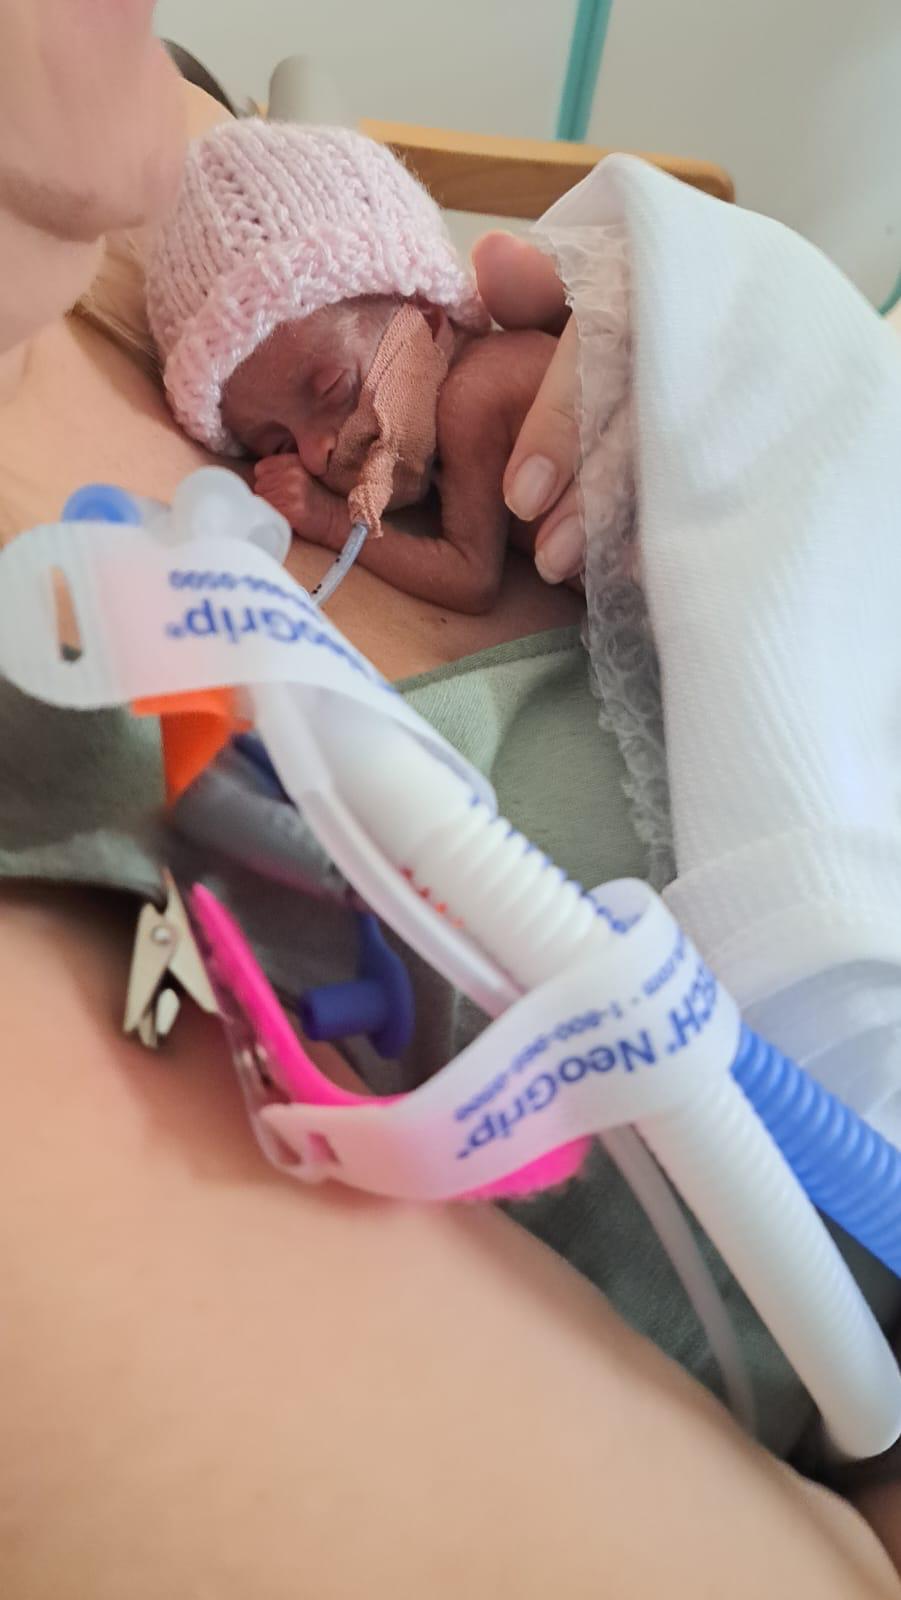 Das Baby hatte in der ersten Woche nach der Geburt Probleme mit seinem Stuhlgang und dem Trinken seiner Milch